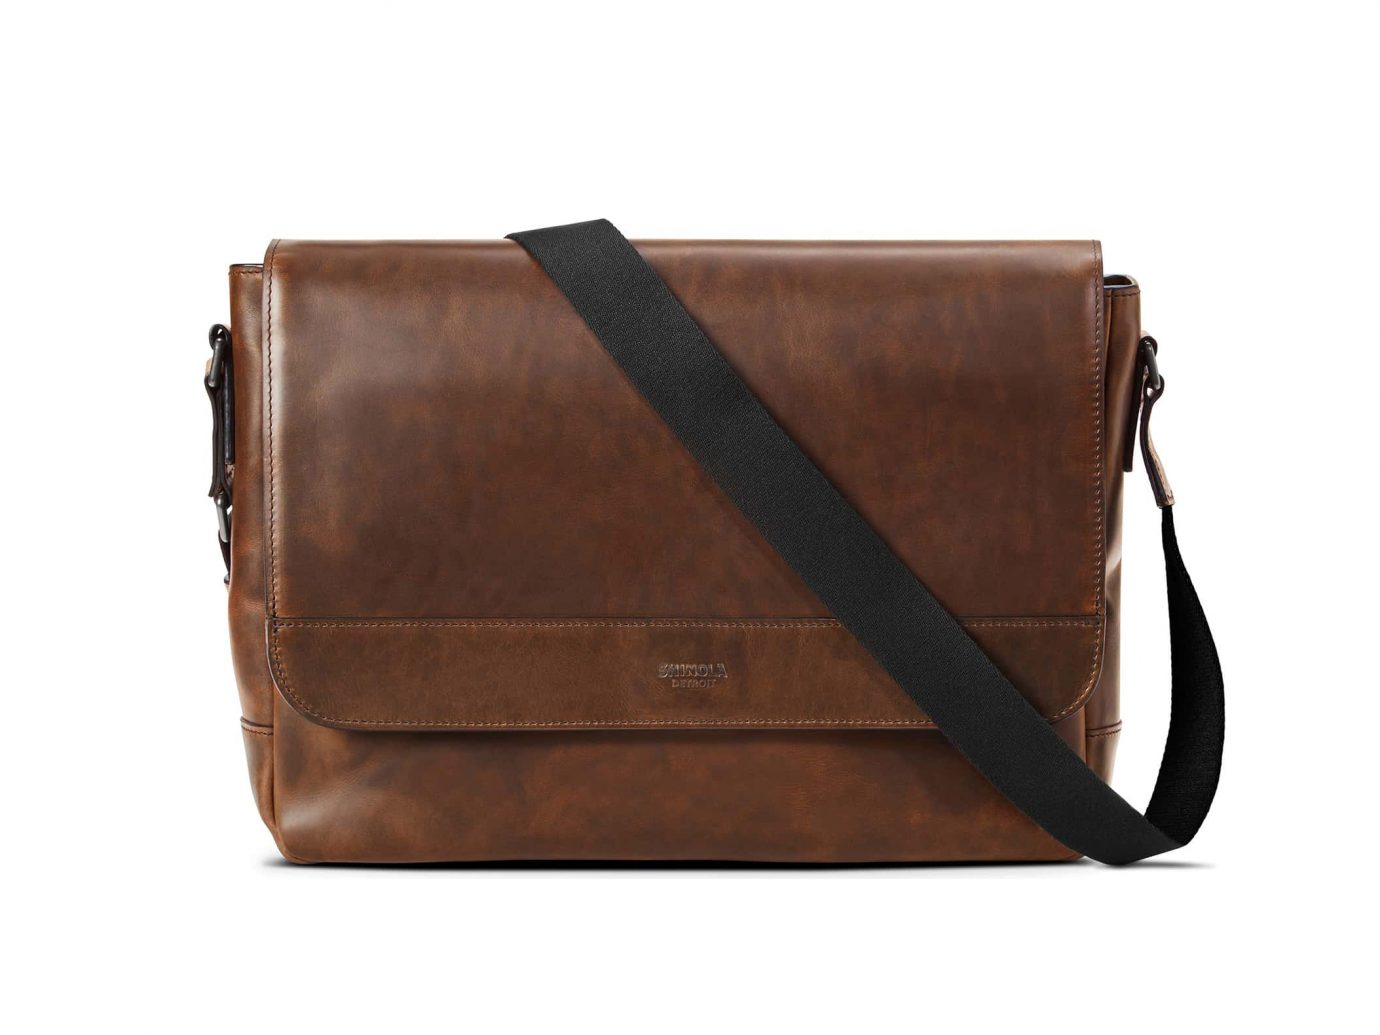 Shinola Navigator Leather Messenger Bag